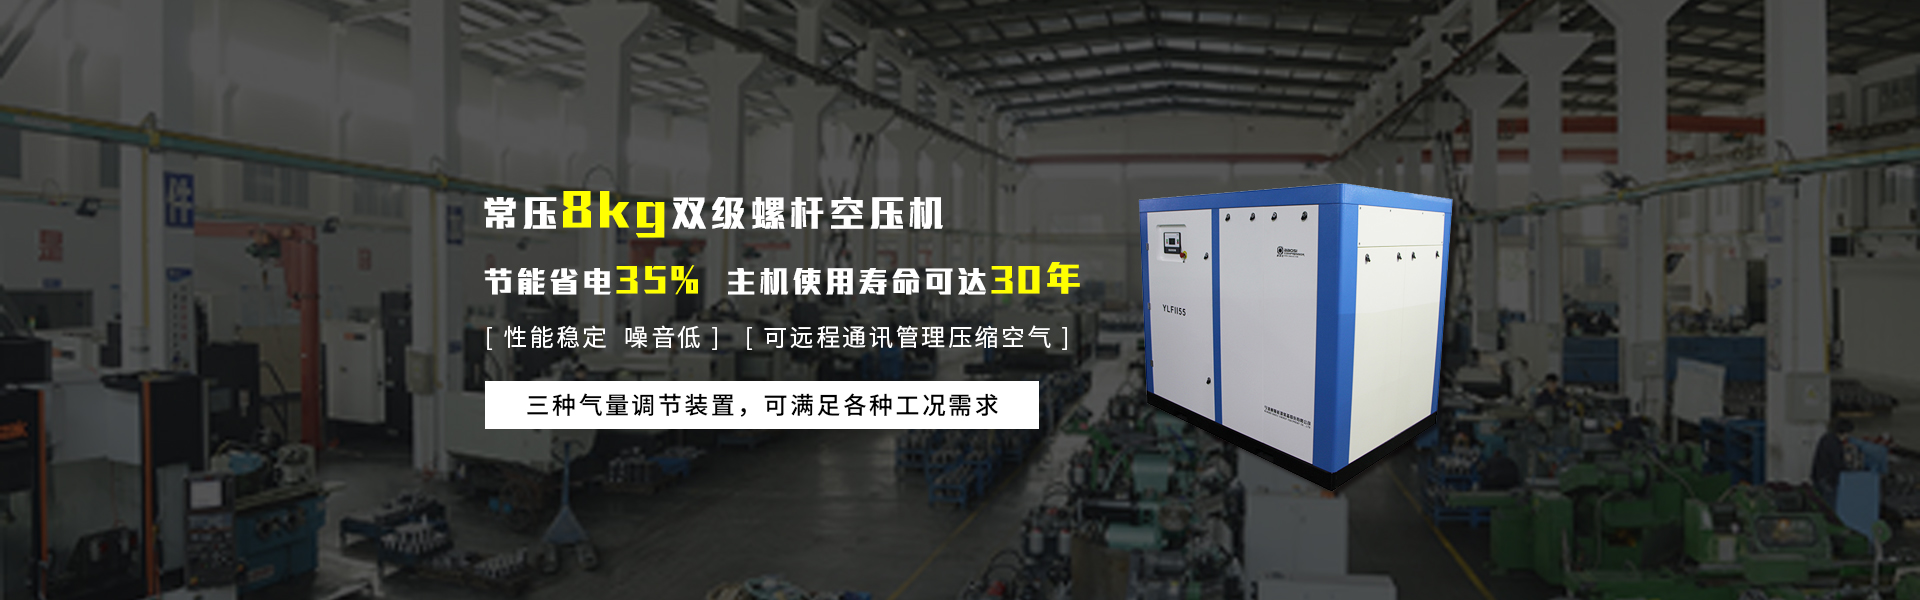 双级螺杆空压机选择广州中天机械,双螺杆空压机节能省电35%